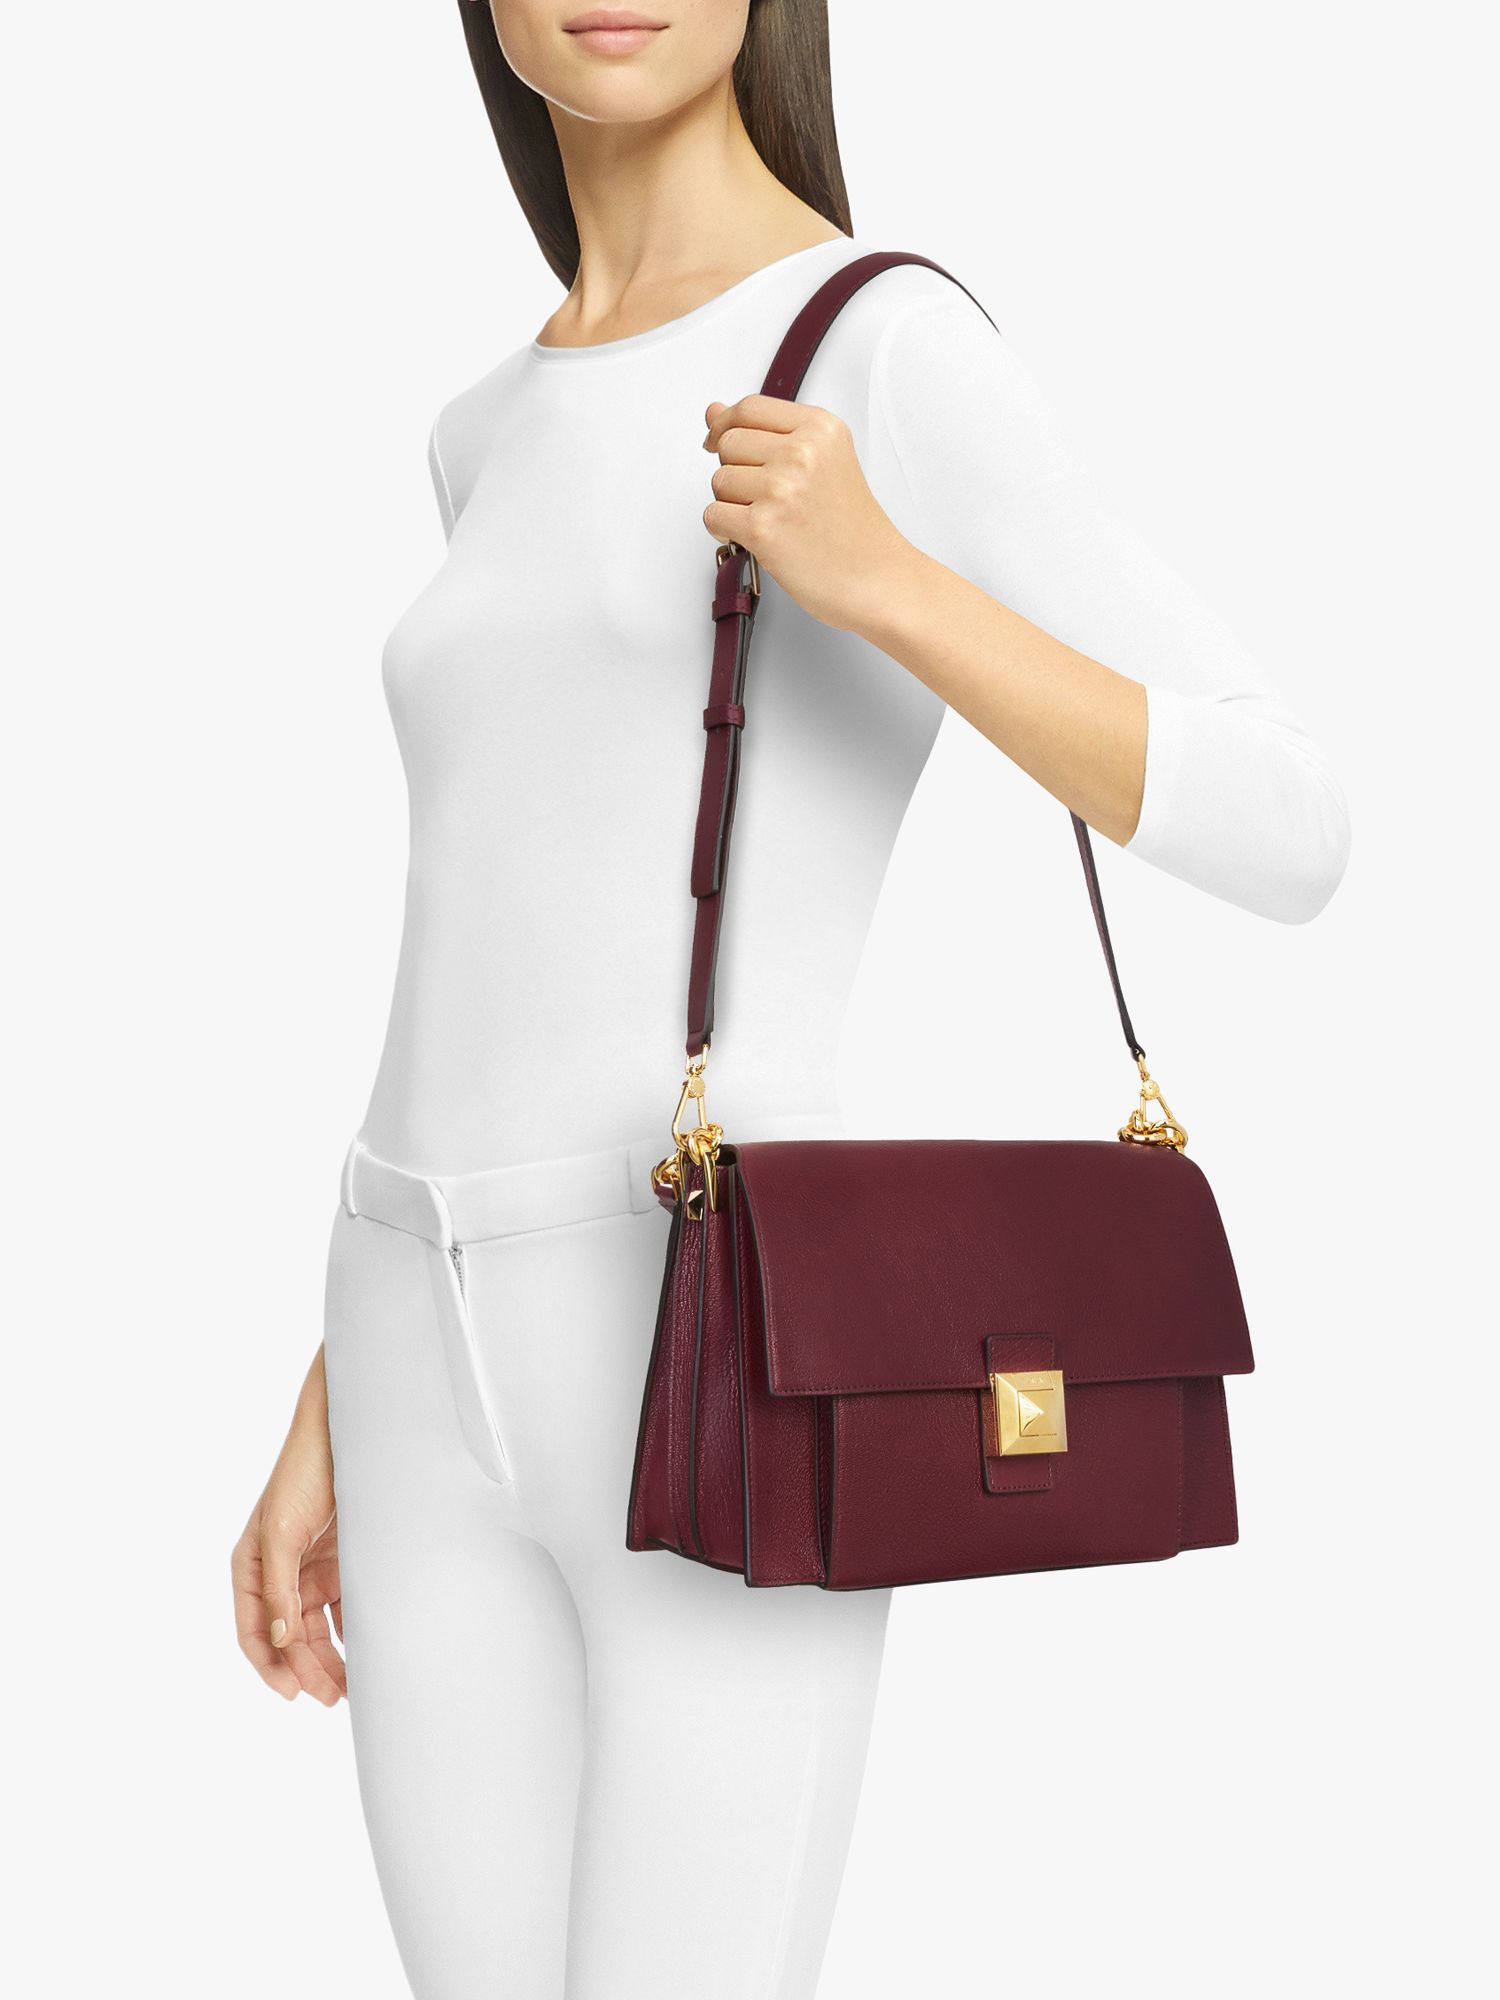 Furla Diva Medium Leather Shoulder Bag